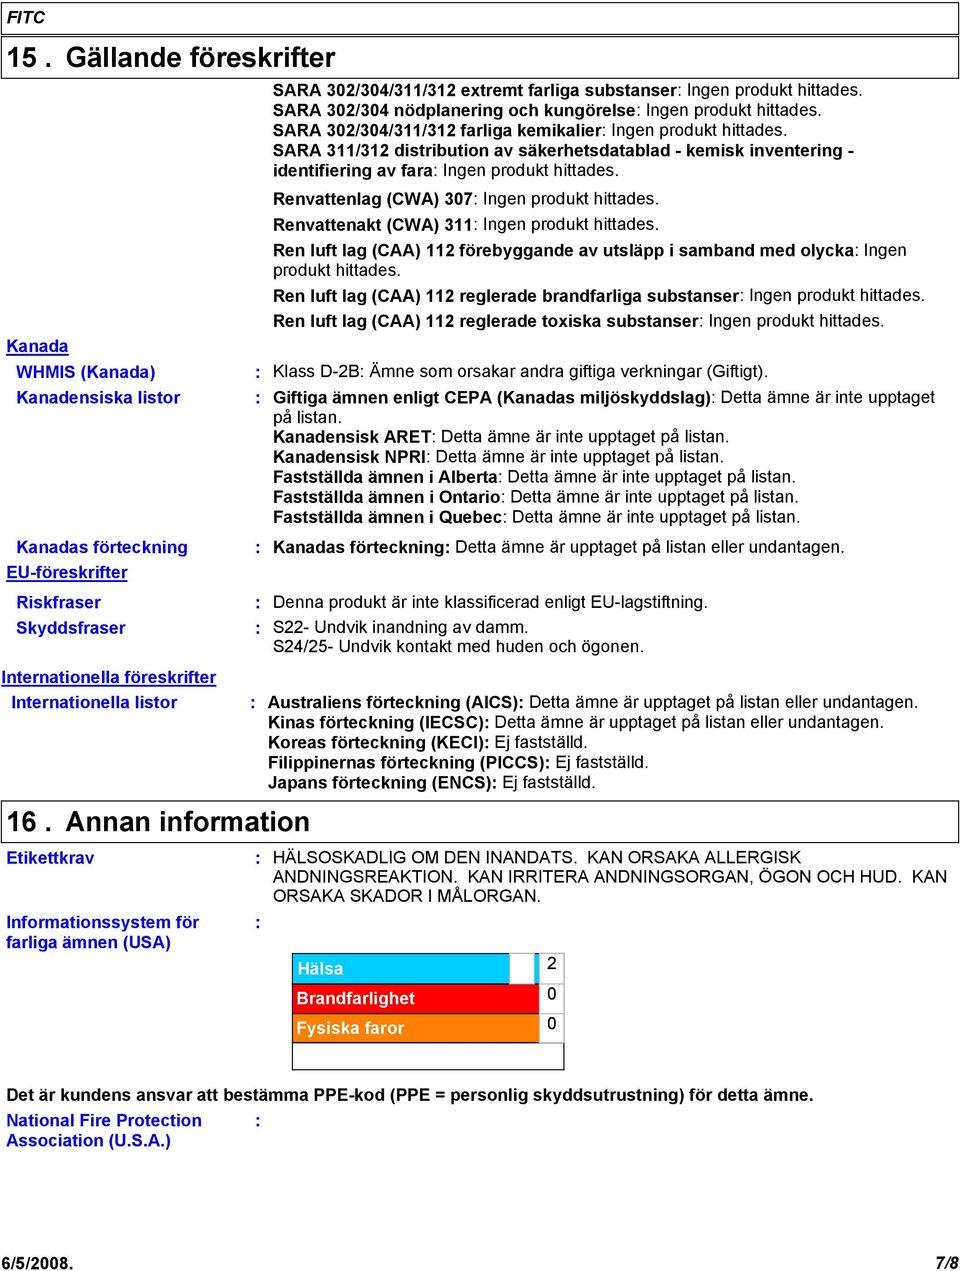 SARA 311/312 distribution av säkerhetsdatablad - kemisk inventering - identifiering av fara Ingen produkt hittades. Renvattenlag (CWA) 307 Ingen produkt hittades.